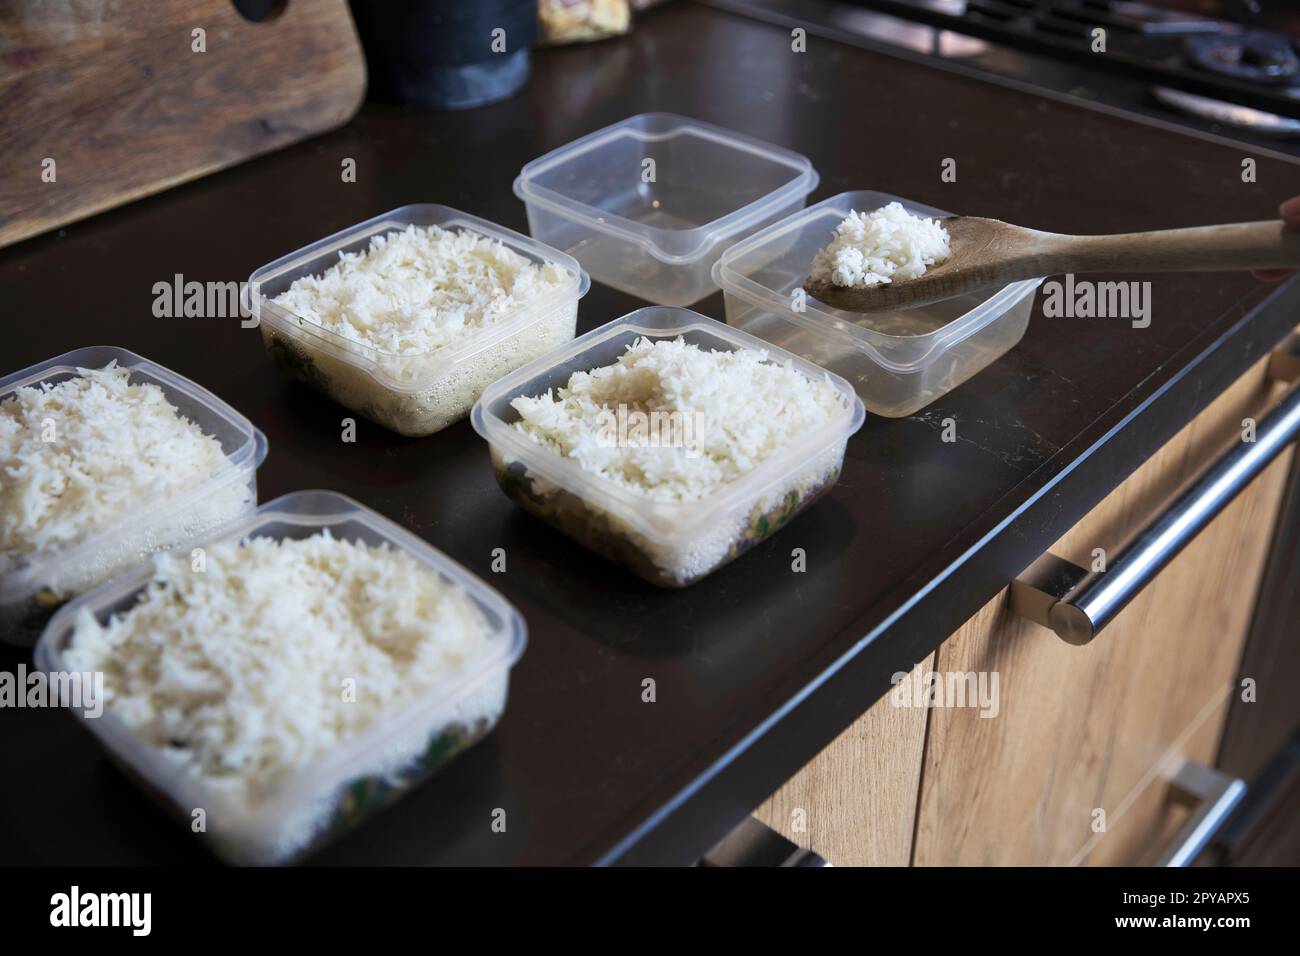 Speisezubereitung Stapel hausgemachter Reis- und Hühnergerichte in Behältern, die zum Einfrieren bereit sind, um sie später als schnelle und einfache Fertiggerichte zu verwenden. Nahrungsvorbereitung für eine gesunde Ernährung Stockfoto